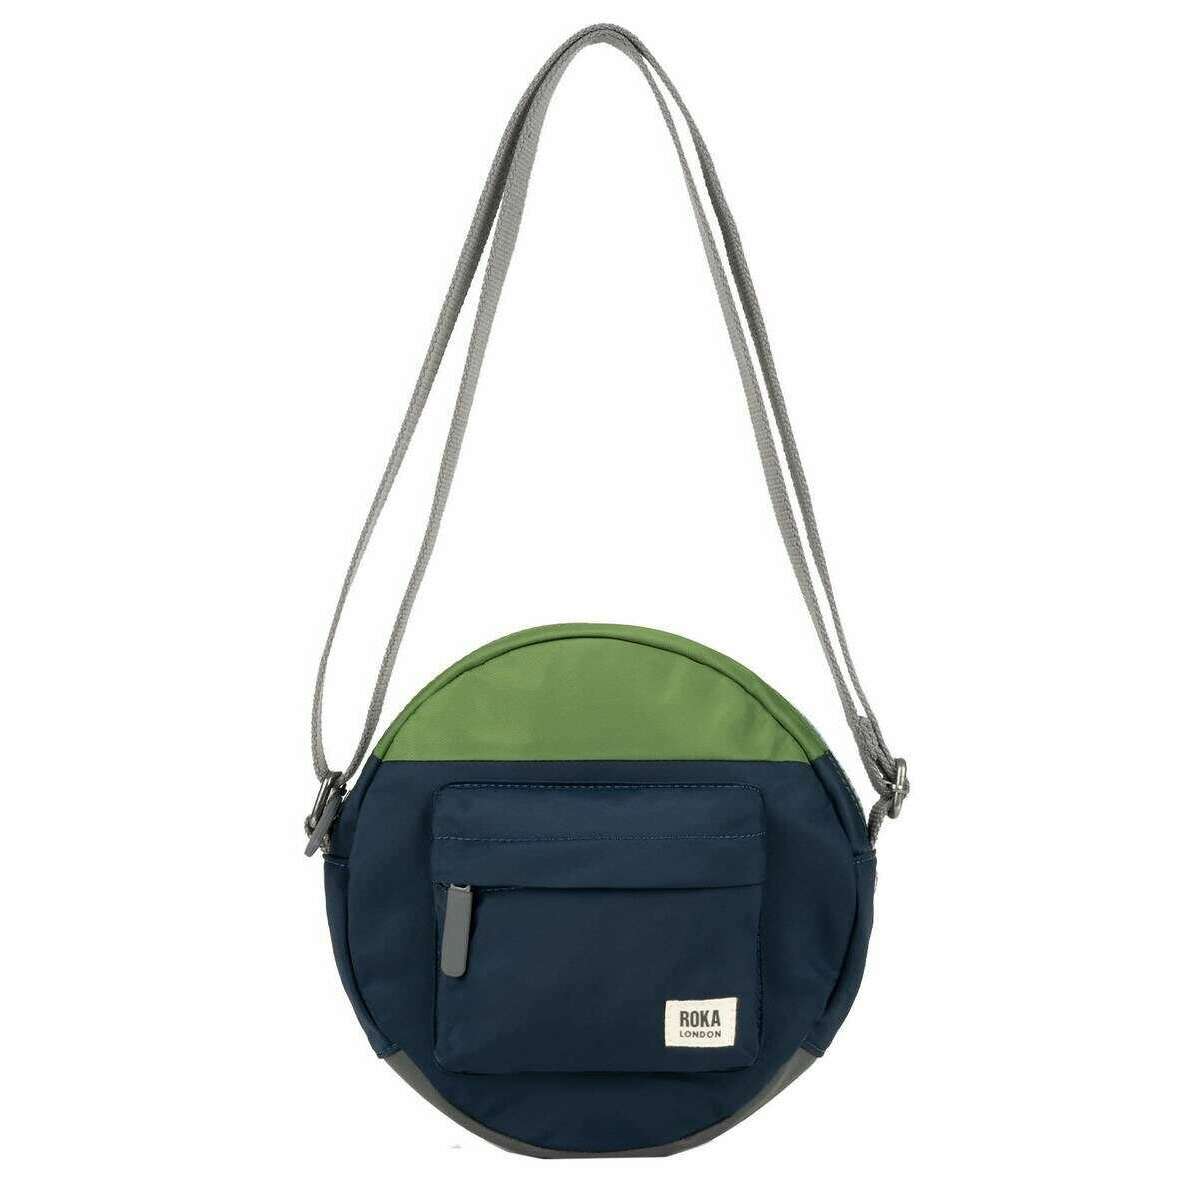 Roka Paddington B Creative Waste Two Tone Recycled Nylon Crossbody Bag - Midnight Blue/Avocado Green